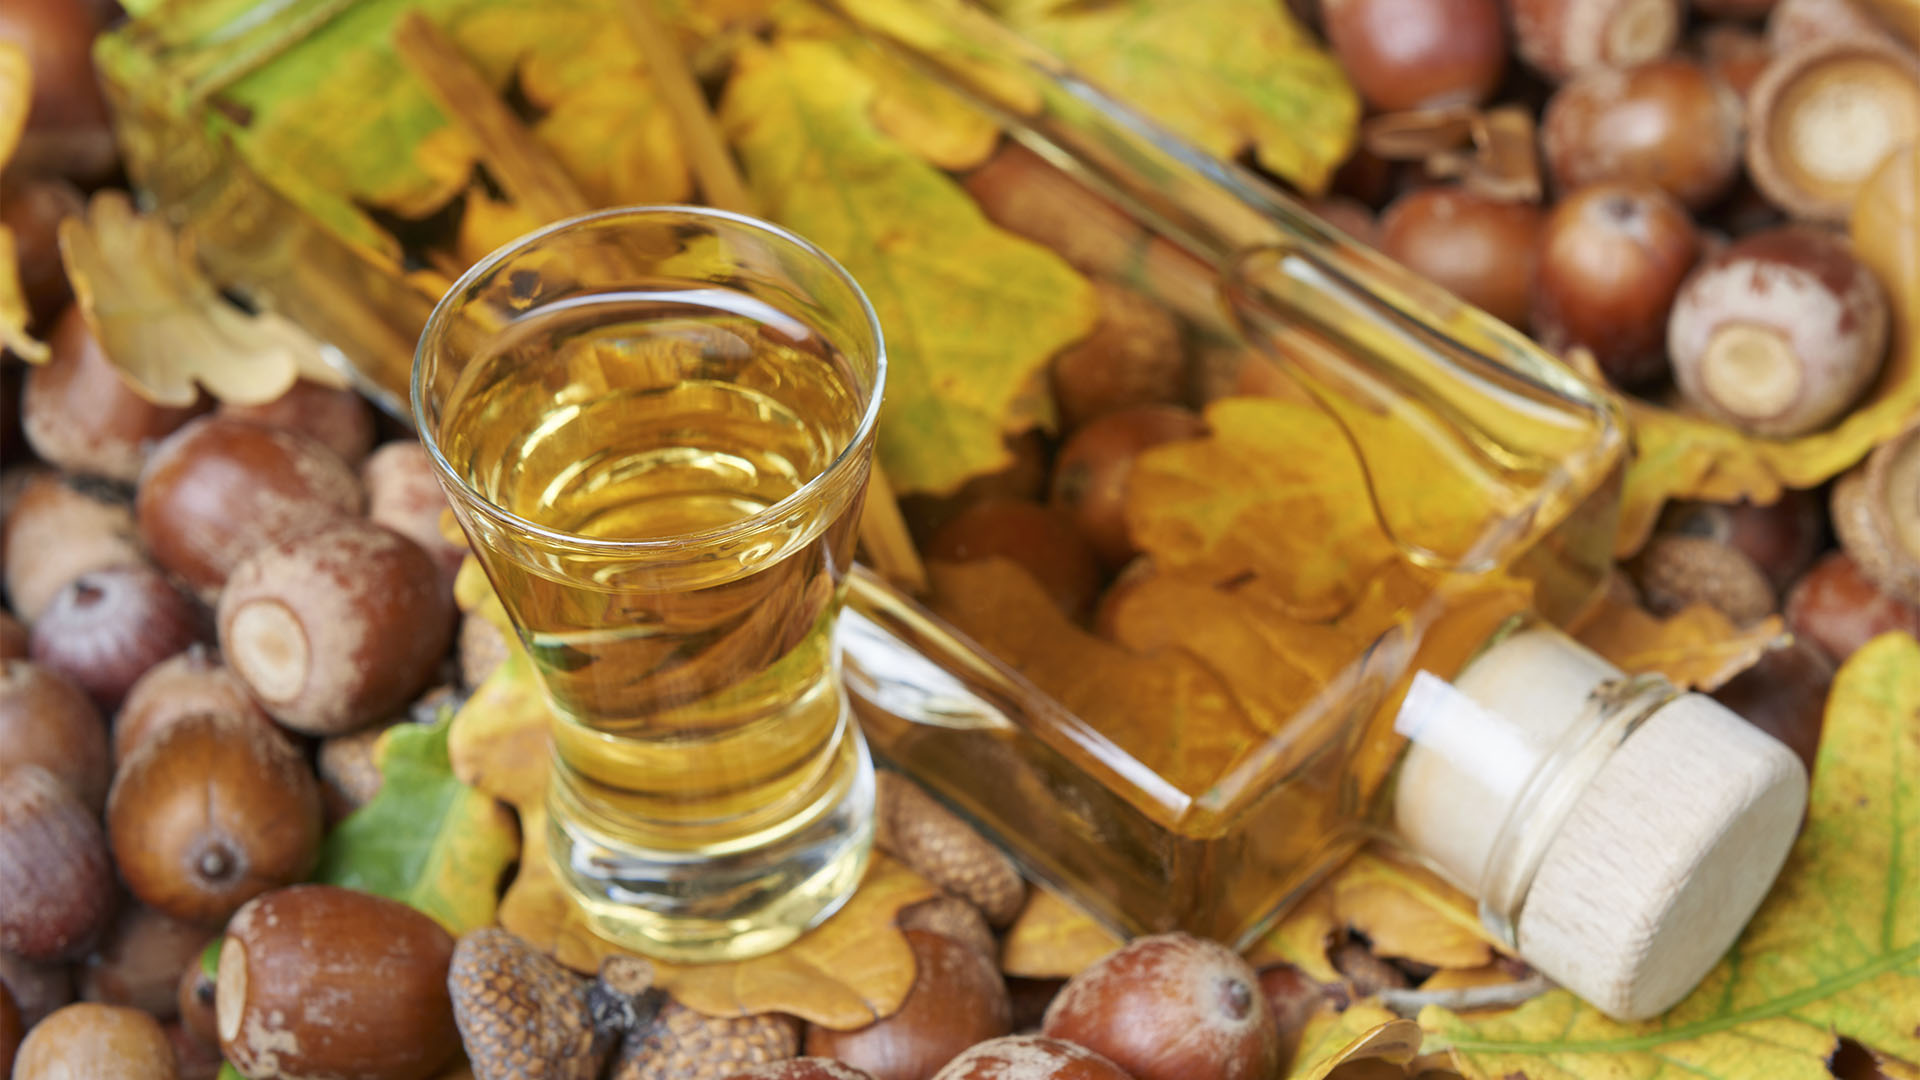 Die alkoholische Extraktion entzieht den Zutaten die wertvollen ätherischen Öle und Inhalte, konzentriert sie und macht sie rund sieben Jahre haltbar. (© istock)